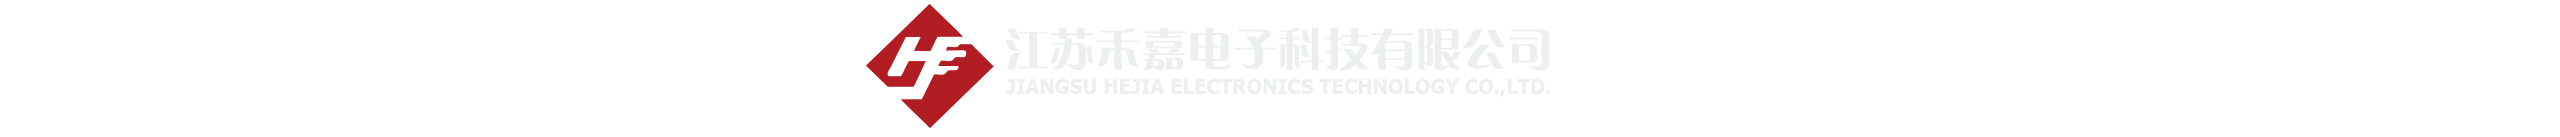 江苏禾嘉电子科技有限公司